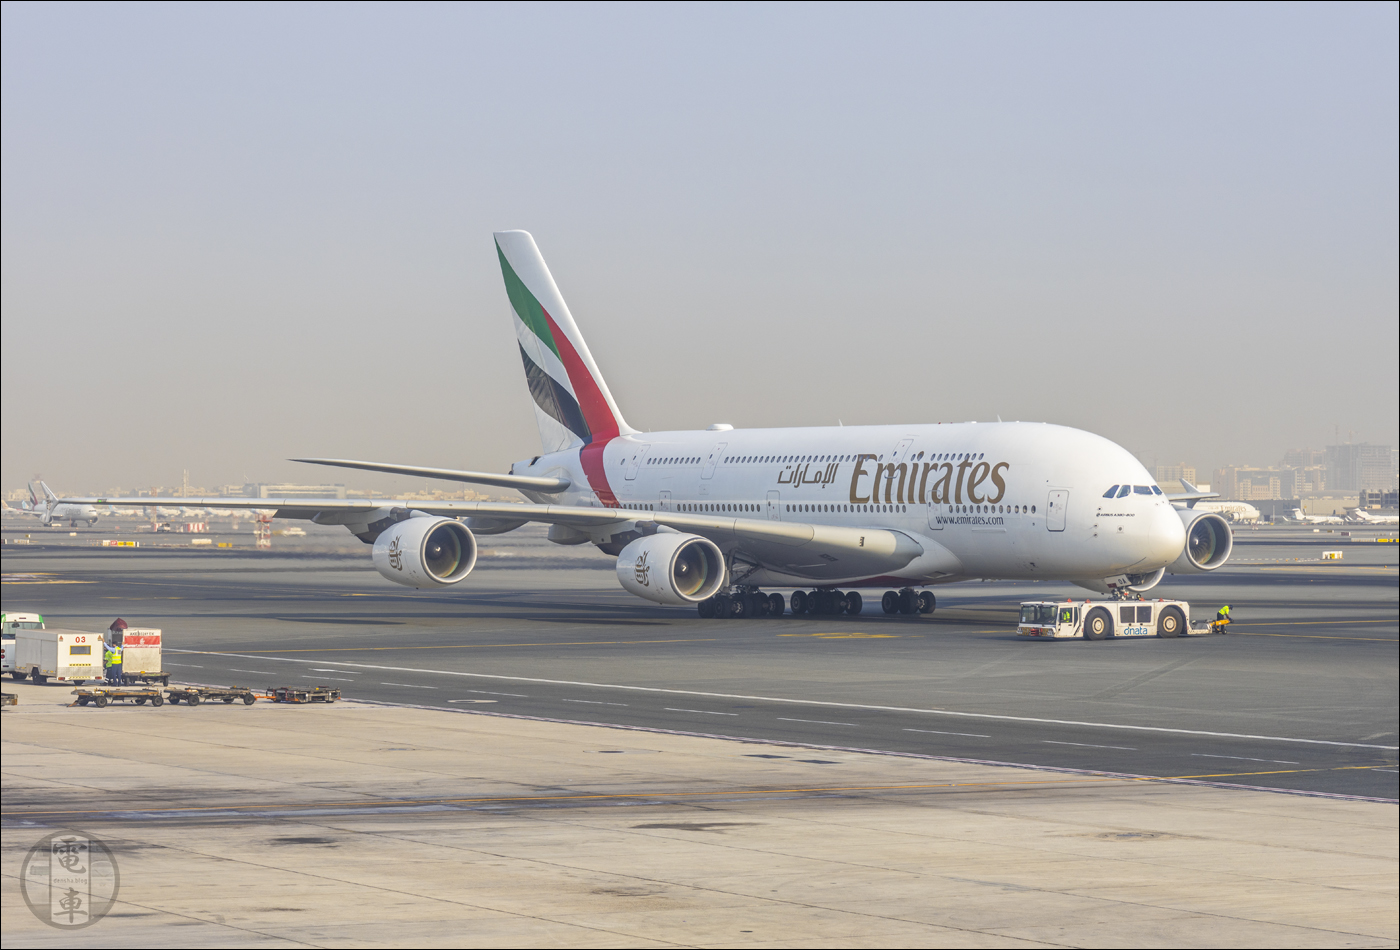 Az Emirates egyik A380-800-as jószága. Hasonlóval utaztunk mi is Taipei és Dubaly, majd később Dubaly és Párizs között is.